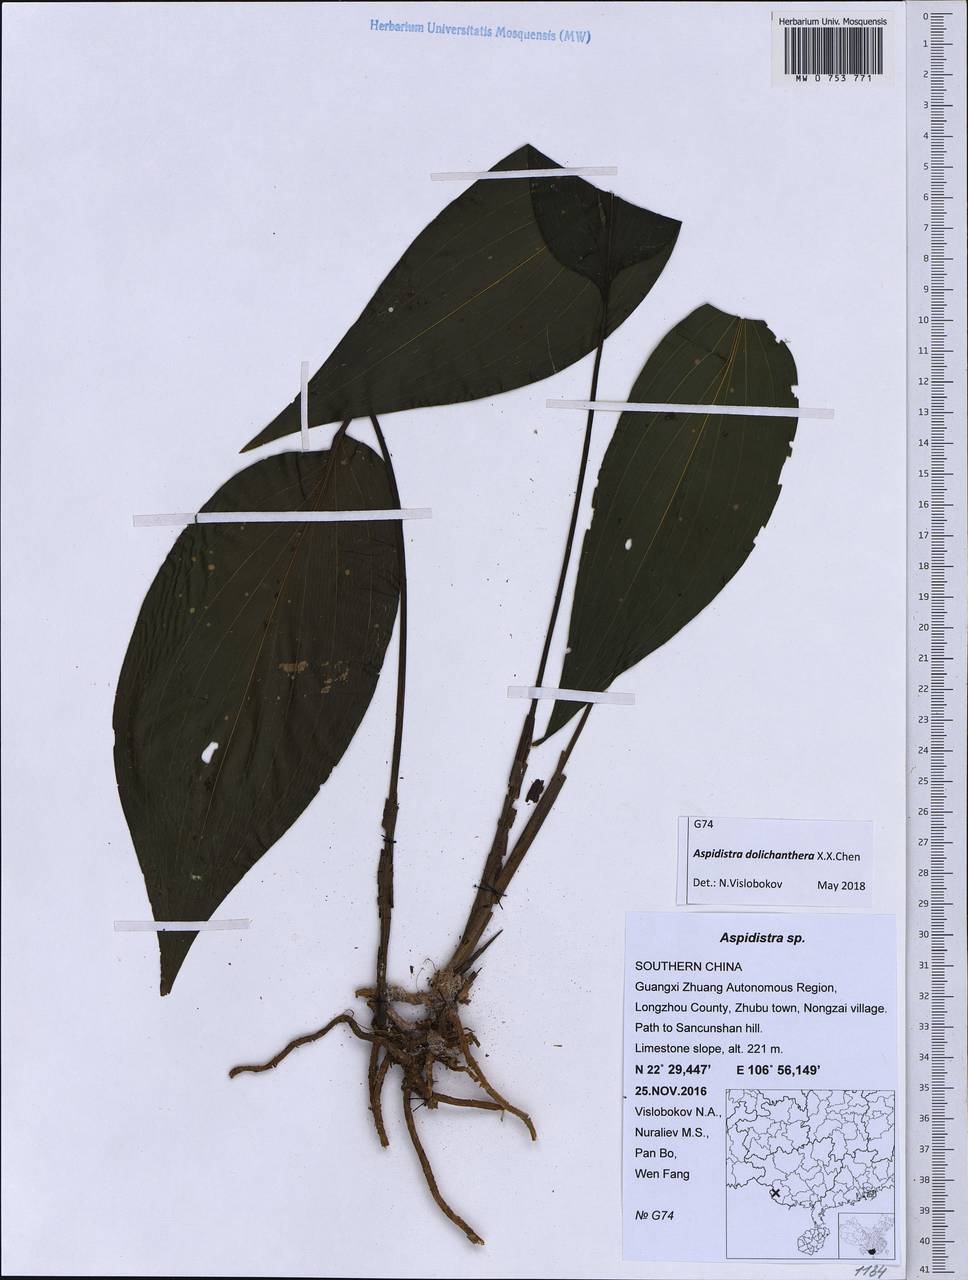 Aspidistra dolichanthera X.X.Chen, South Asia, South Asia (Asia outside ex-Soviet states and Mongolia) (ASIA) (China)